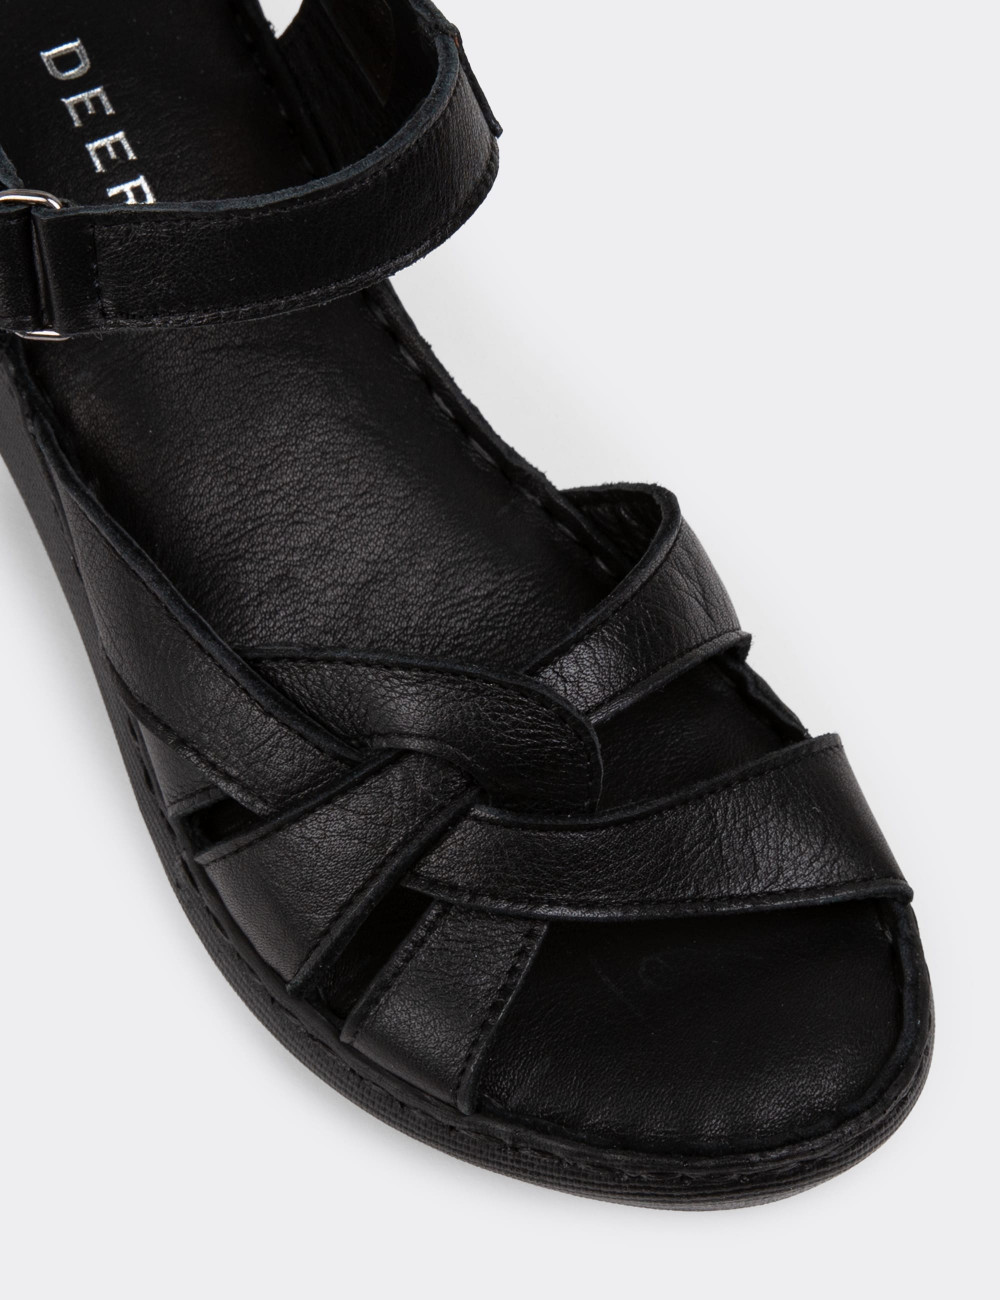 Hakiki Deri Siyah Kadın Dolgu Topuk Sandalet - SE141ZSYHC01